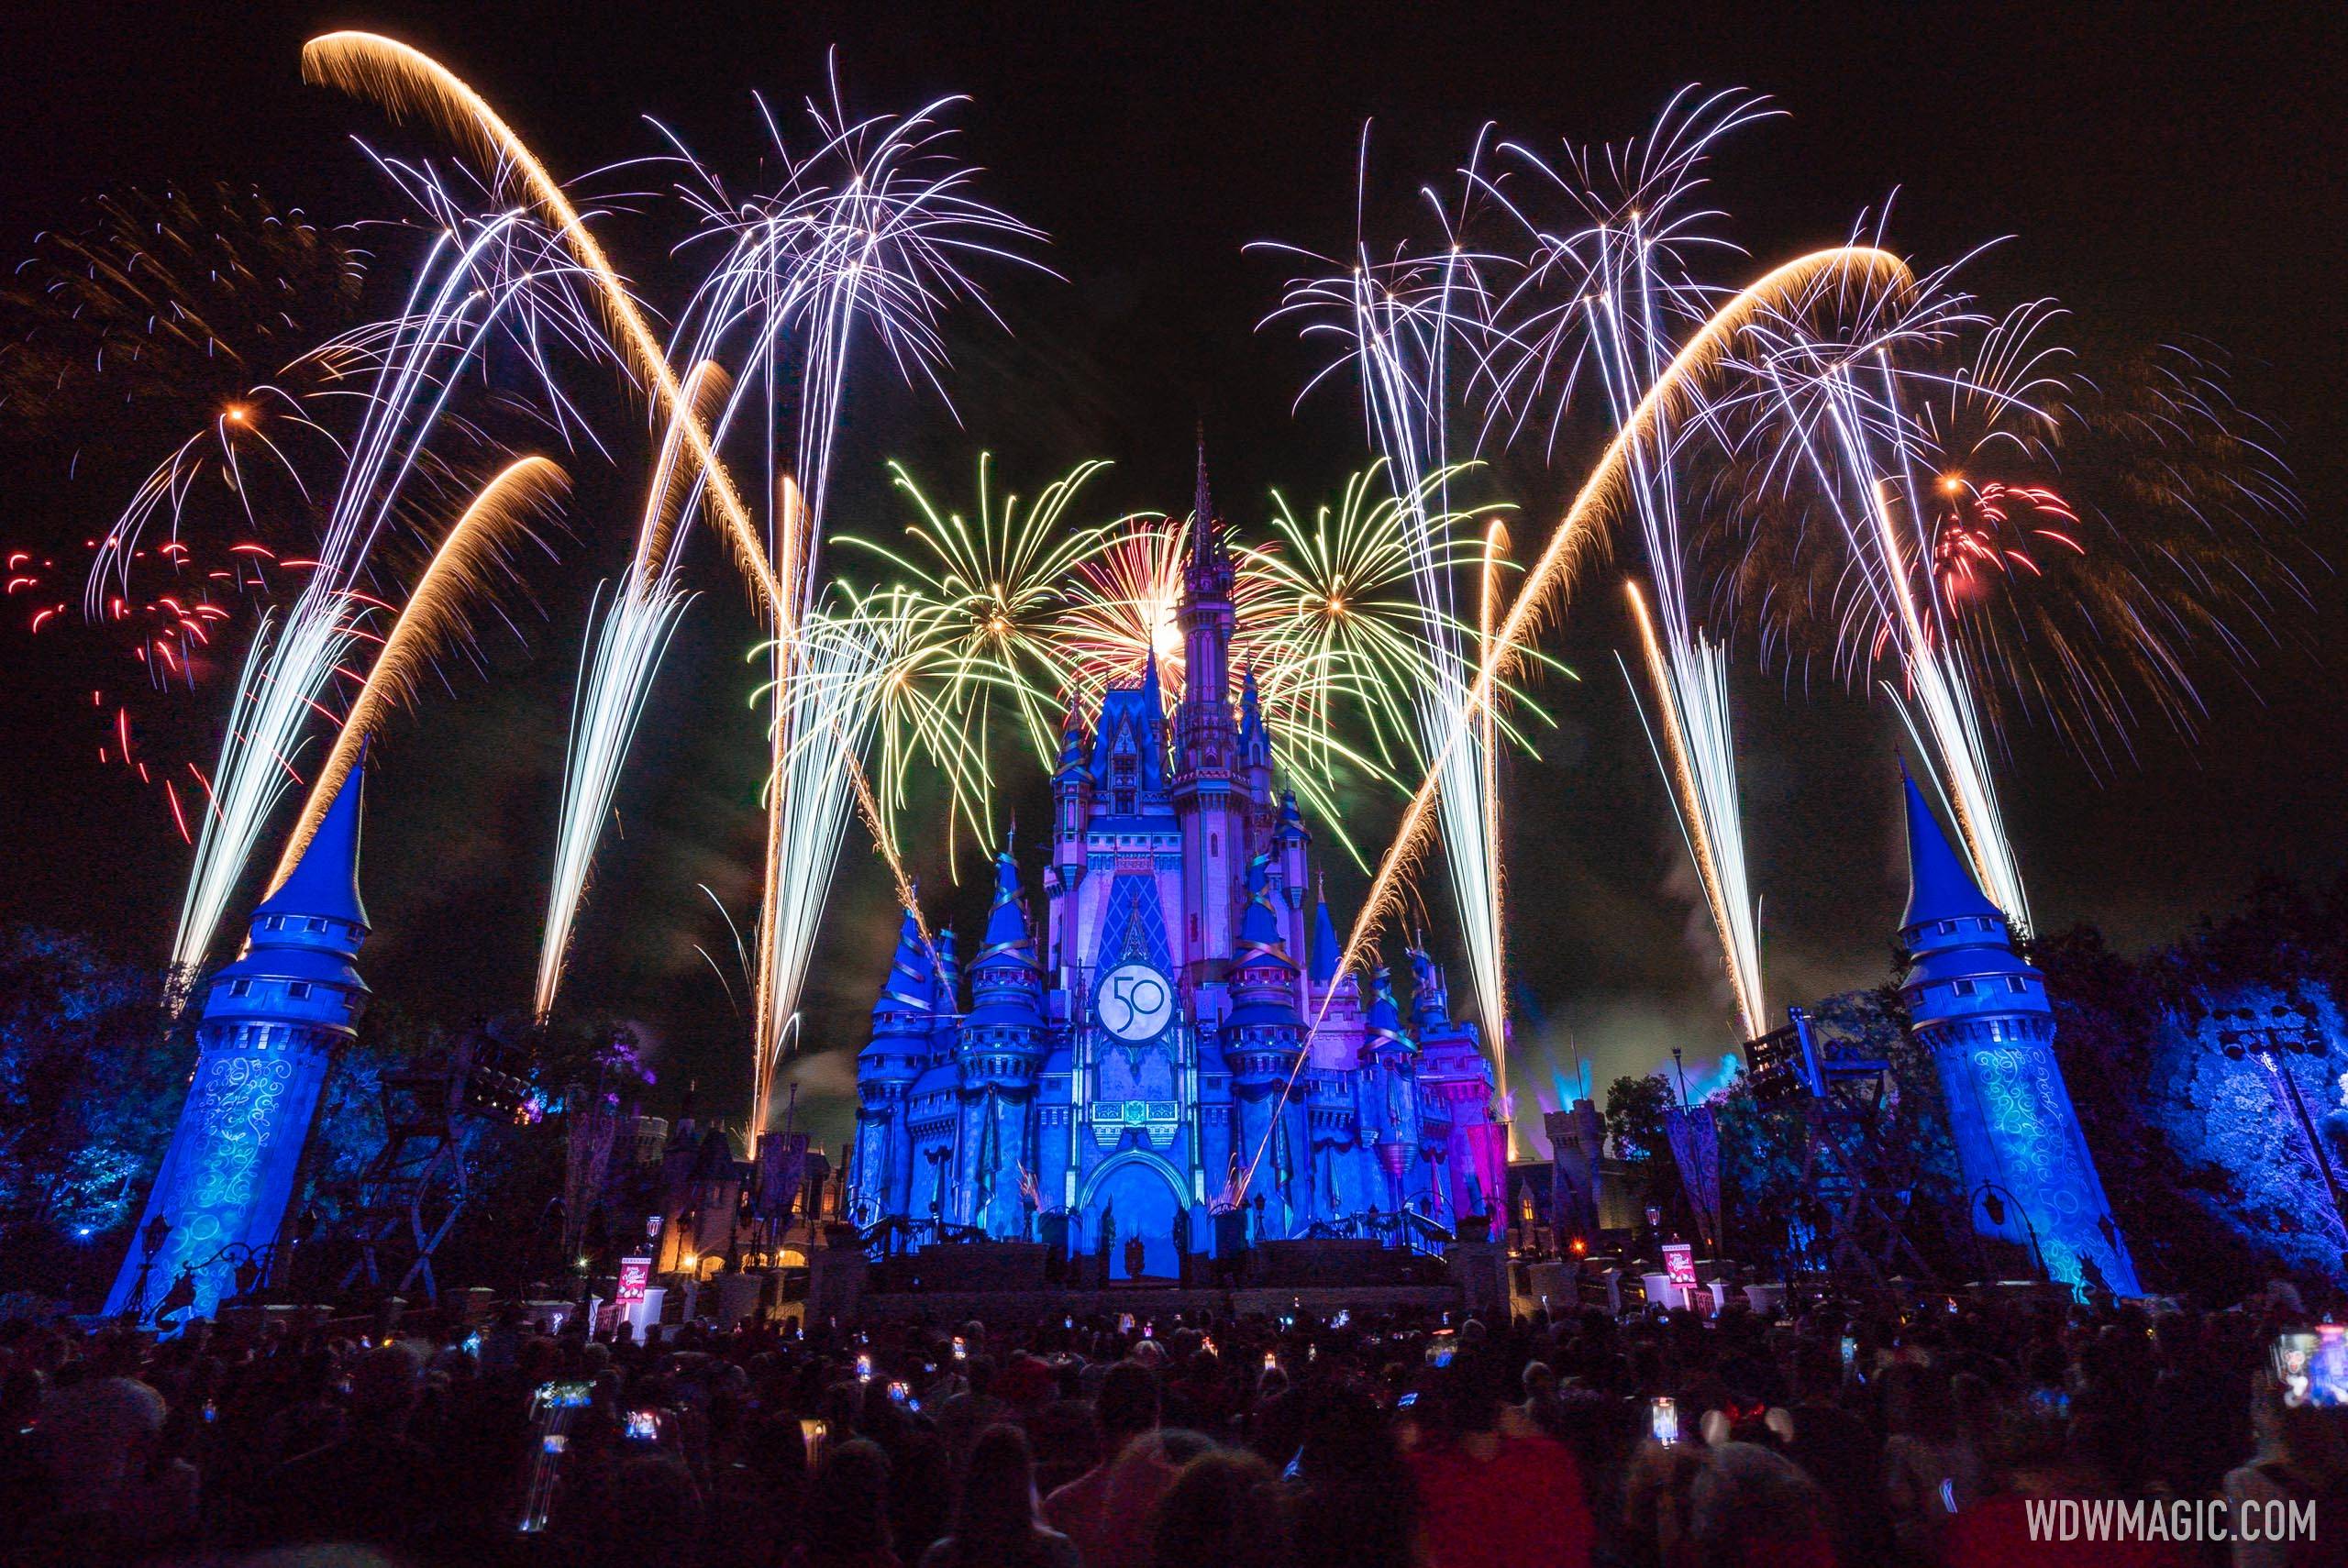 Minnie's Wonderful Christmastime Fireworks show 2022